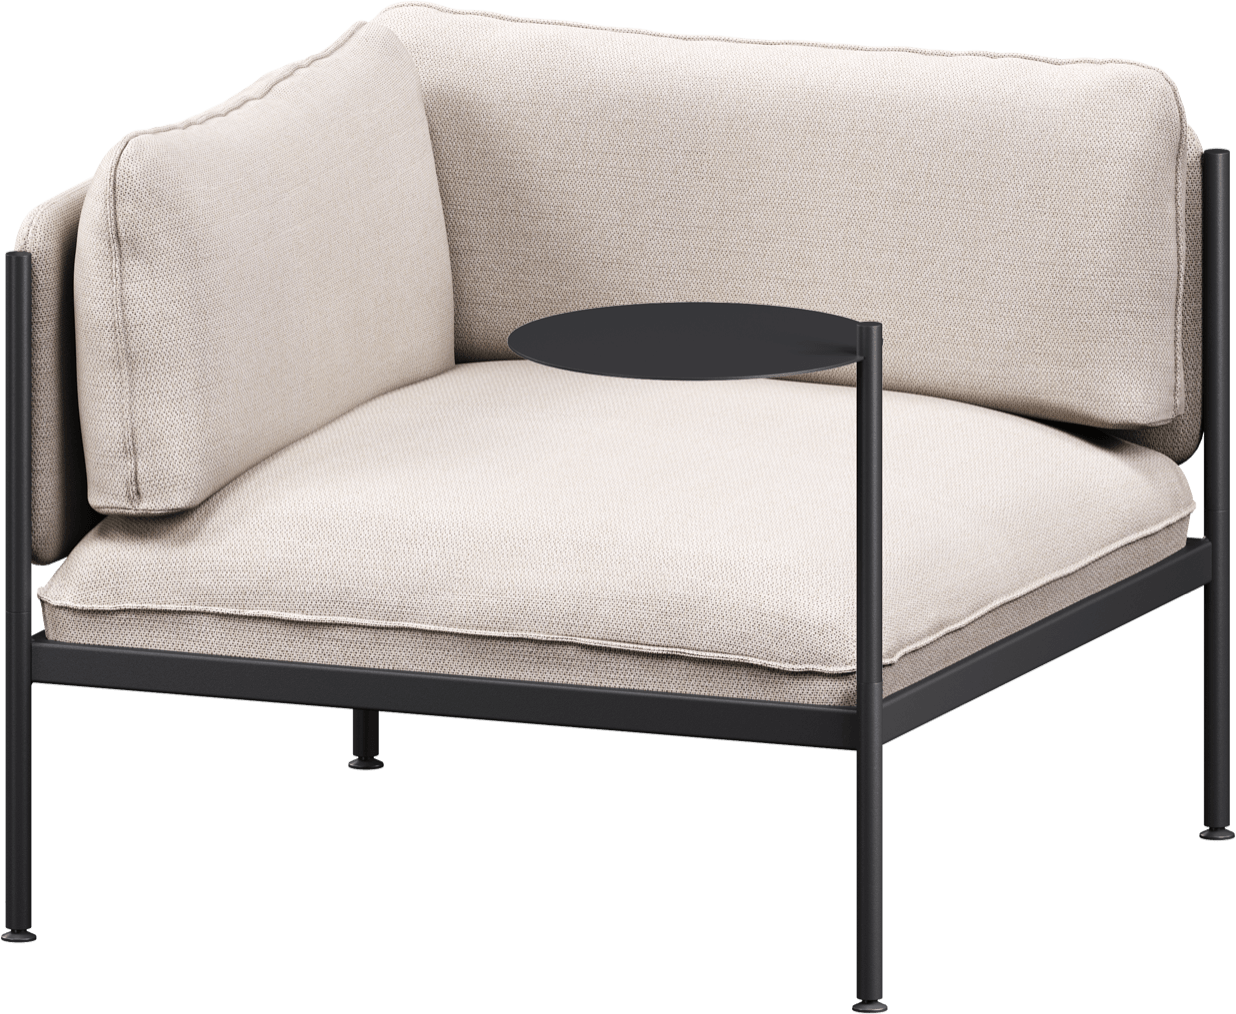 Toom Modular Eck-Sessel in Oatmilk Beige  präsentiert im Onlineshop von KAQTU Design AG. Sessel mit Armlehnen ist von Noo.ma